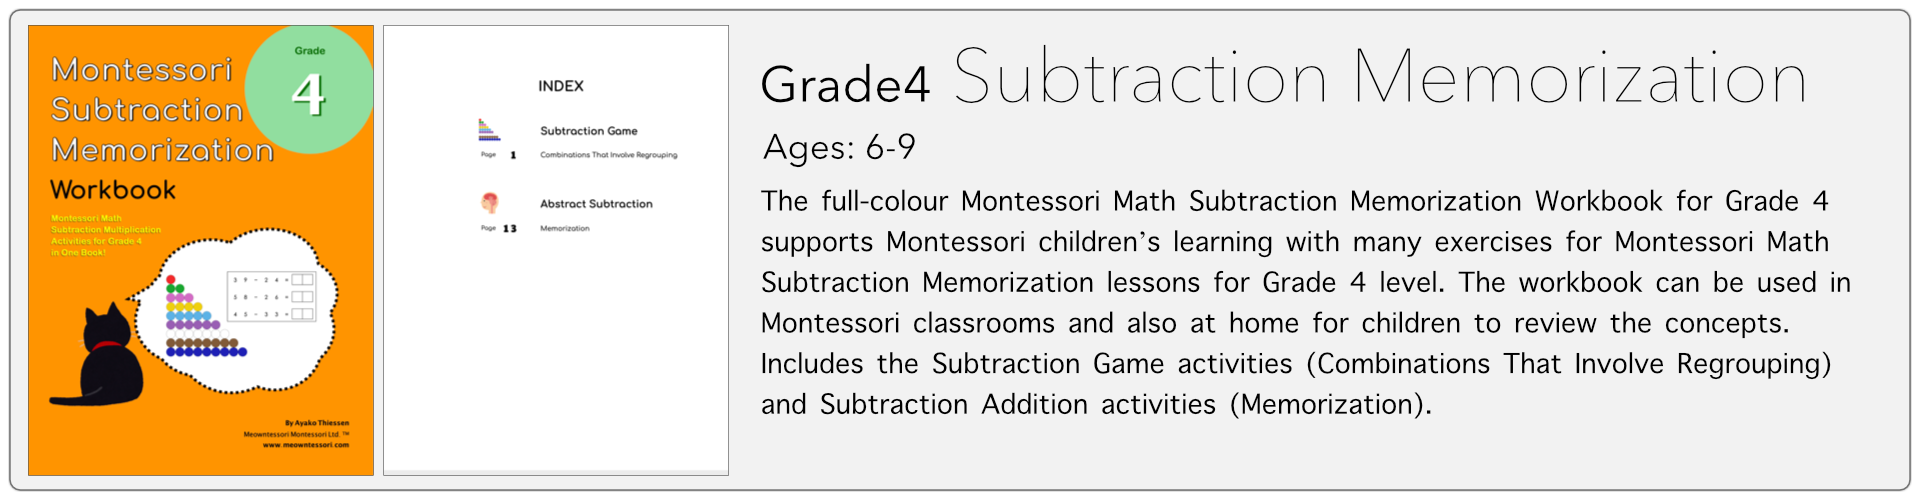 grade4 subtraction memorization